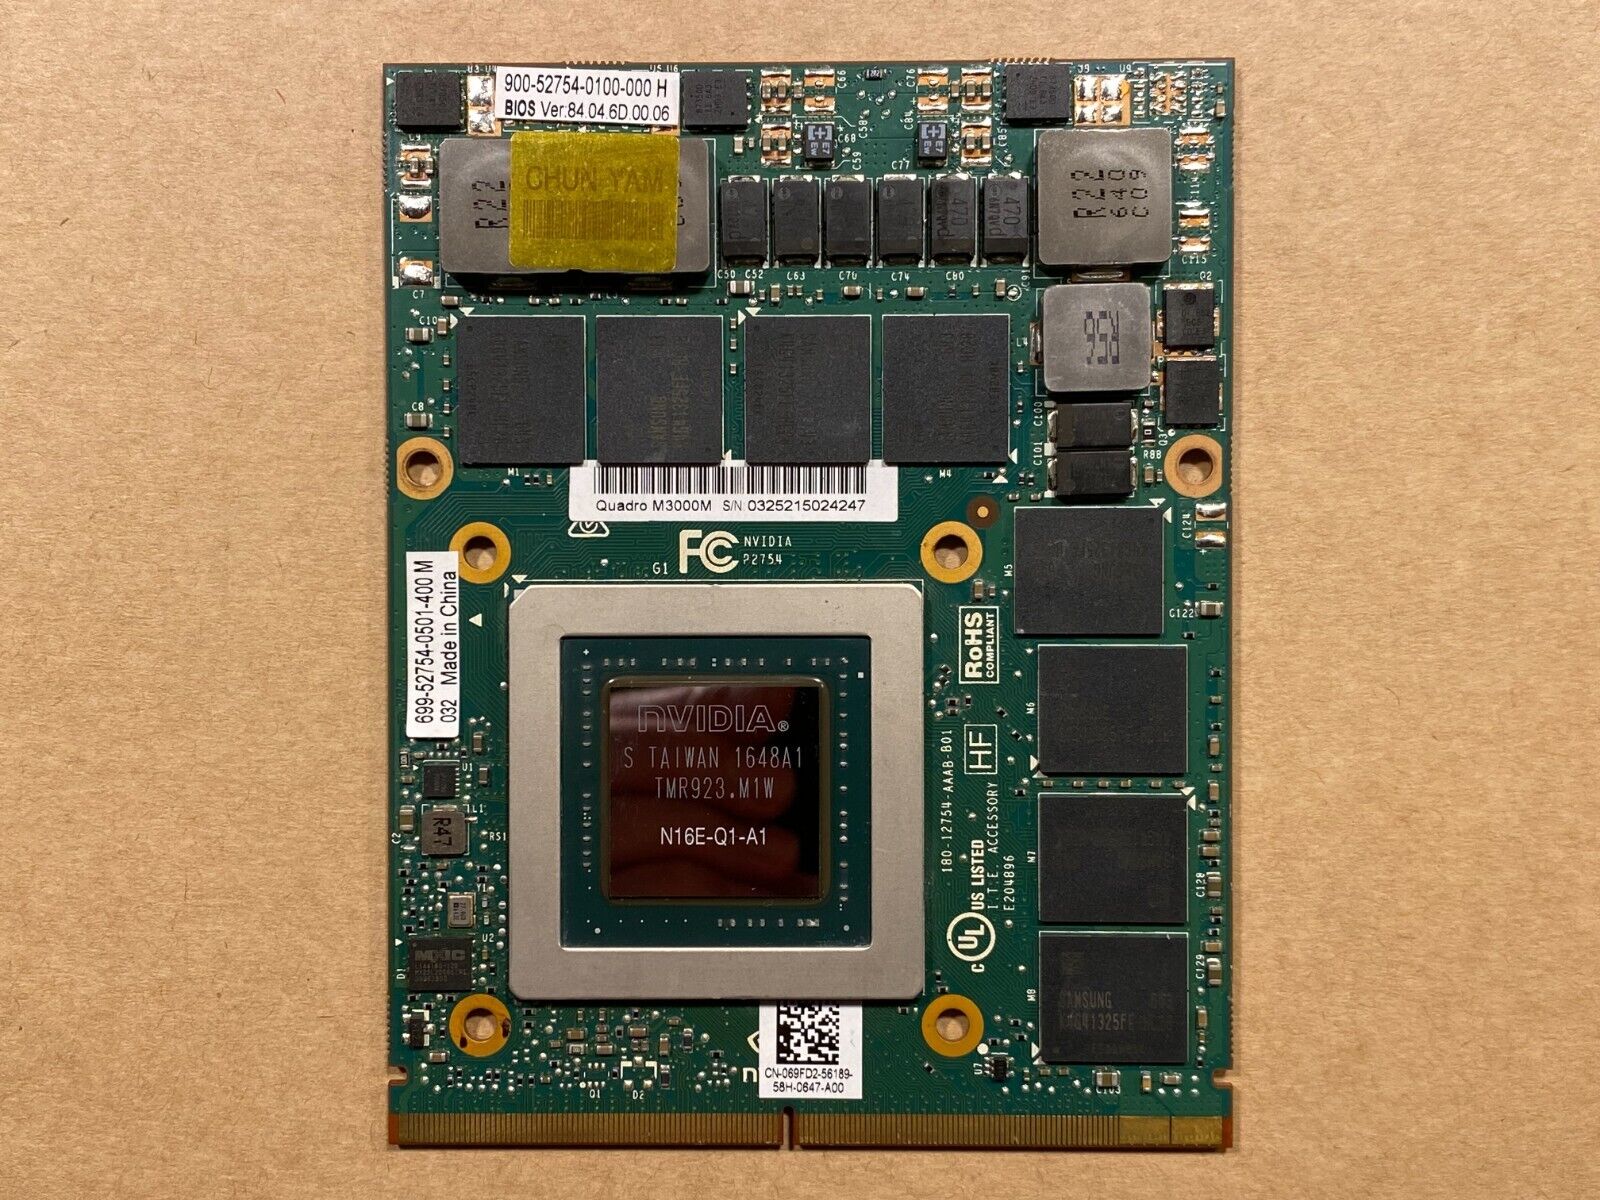 NEW Dell Precision 7710 Nvidia Quadro M3000M 4GB MXM Video Graphics Card 69FD2